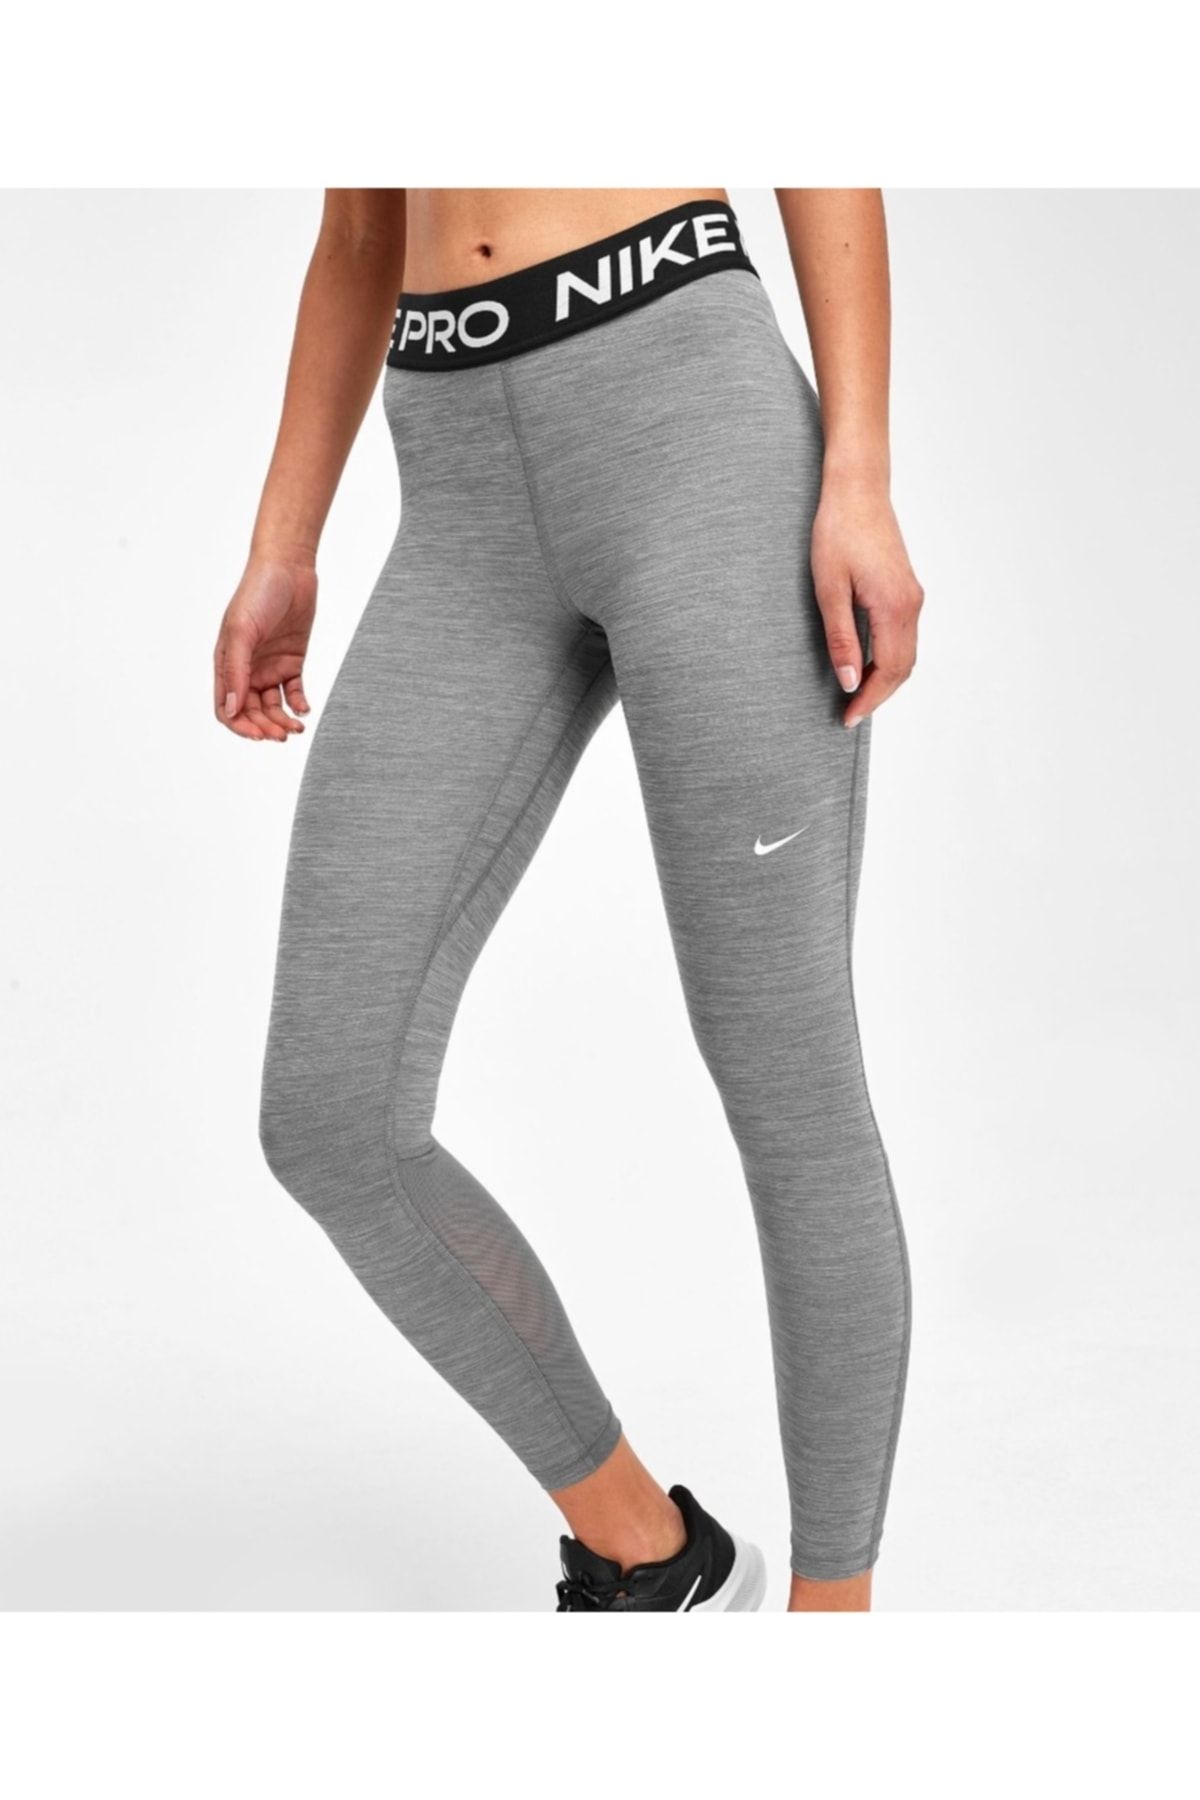 Nike Pro 365 High Waisted 18cm (approx.) Women's Leggings - Trendyol